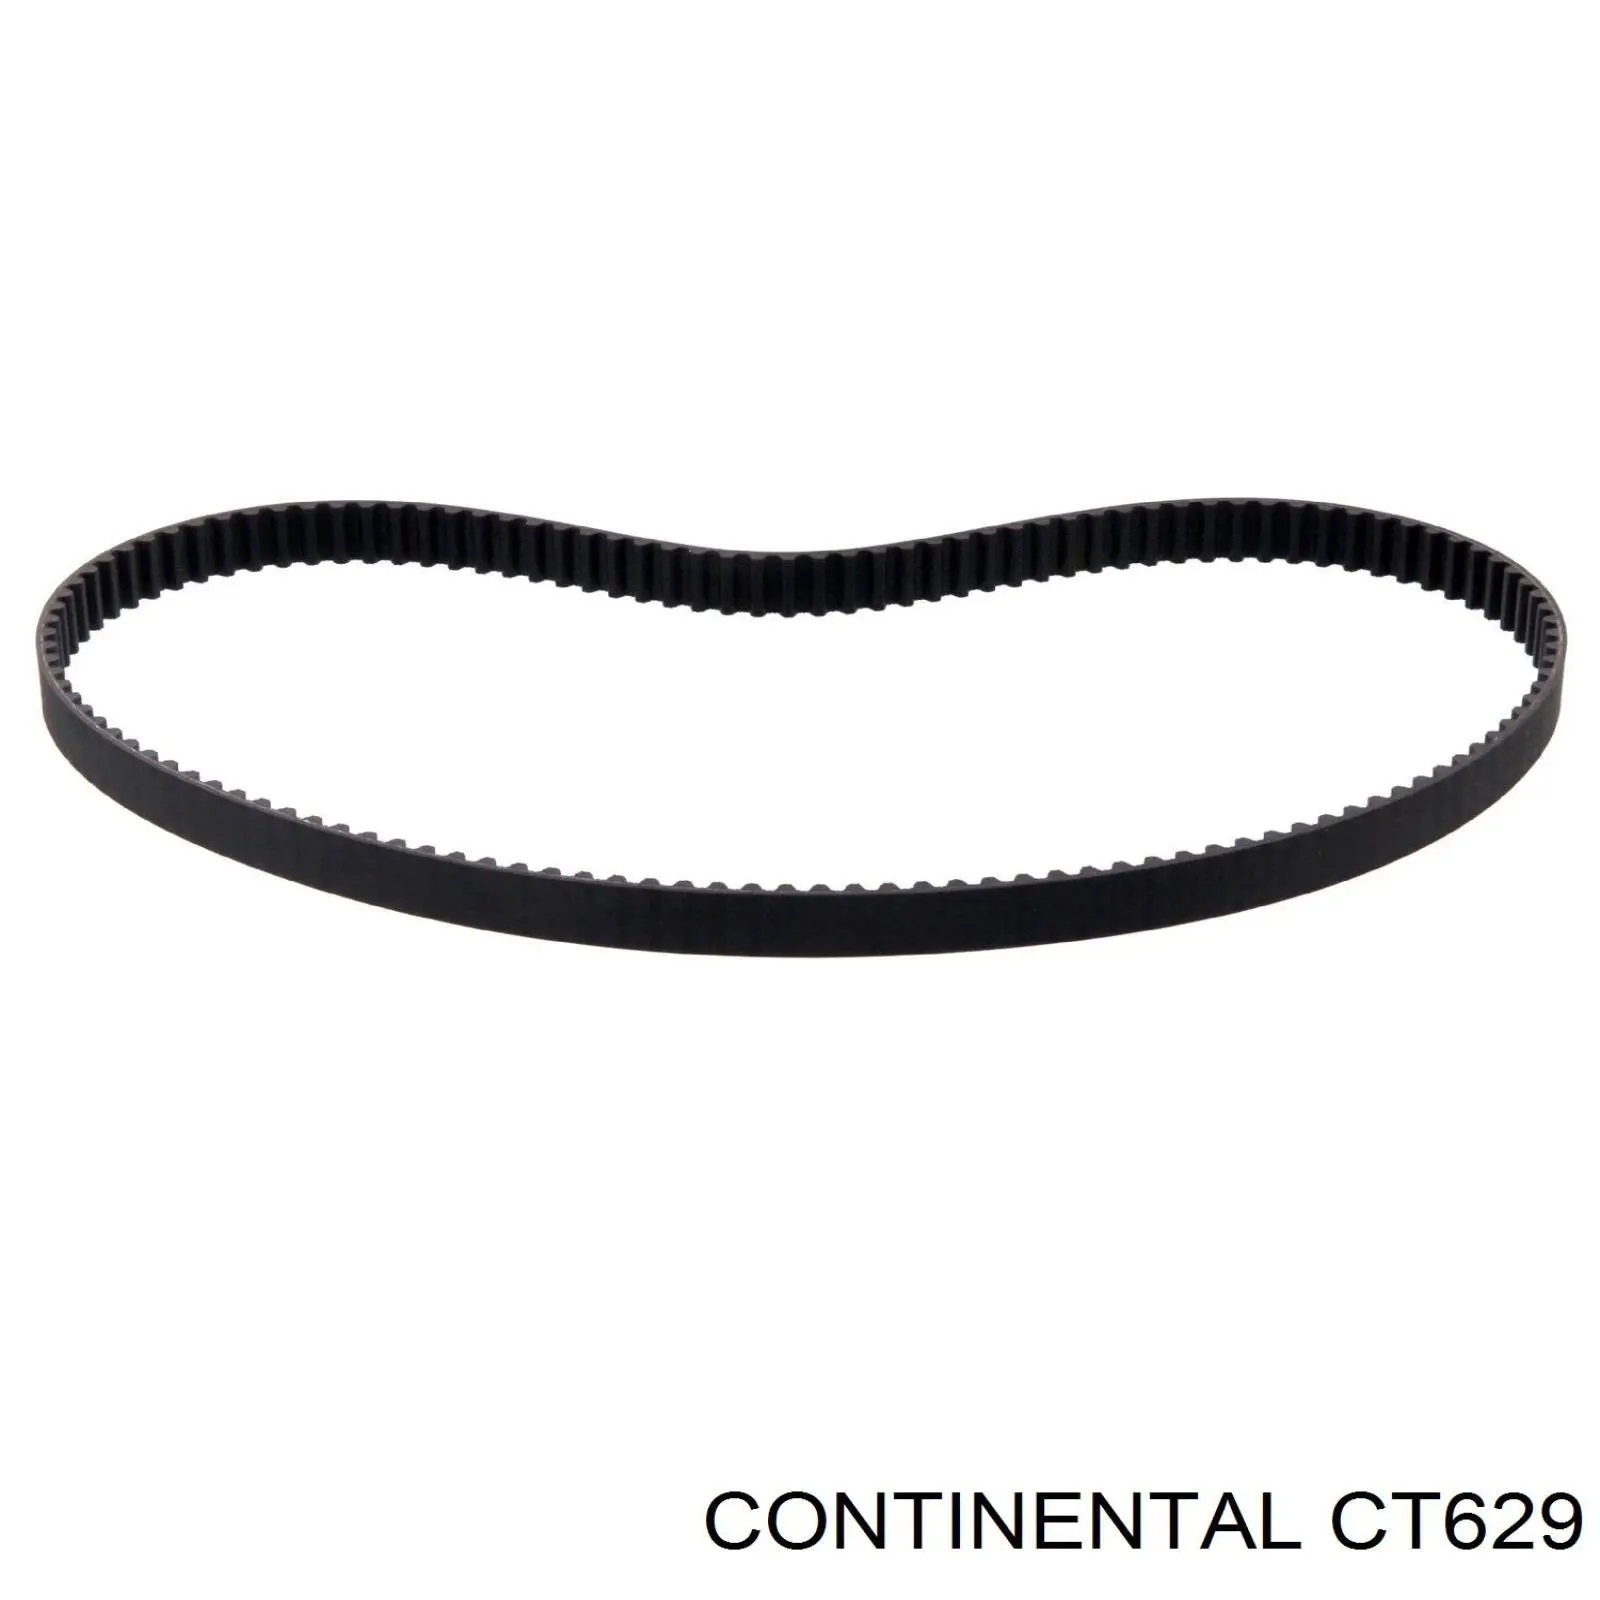 CT629 Continental/Siemens correa distribución